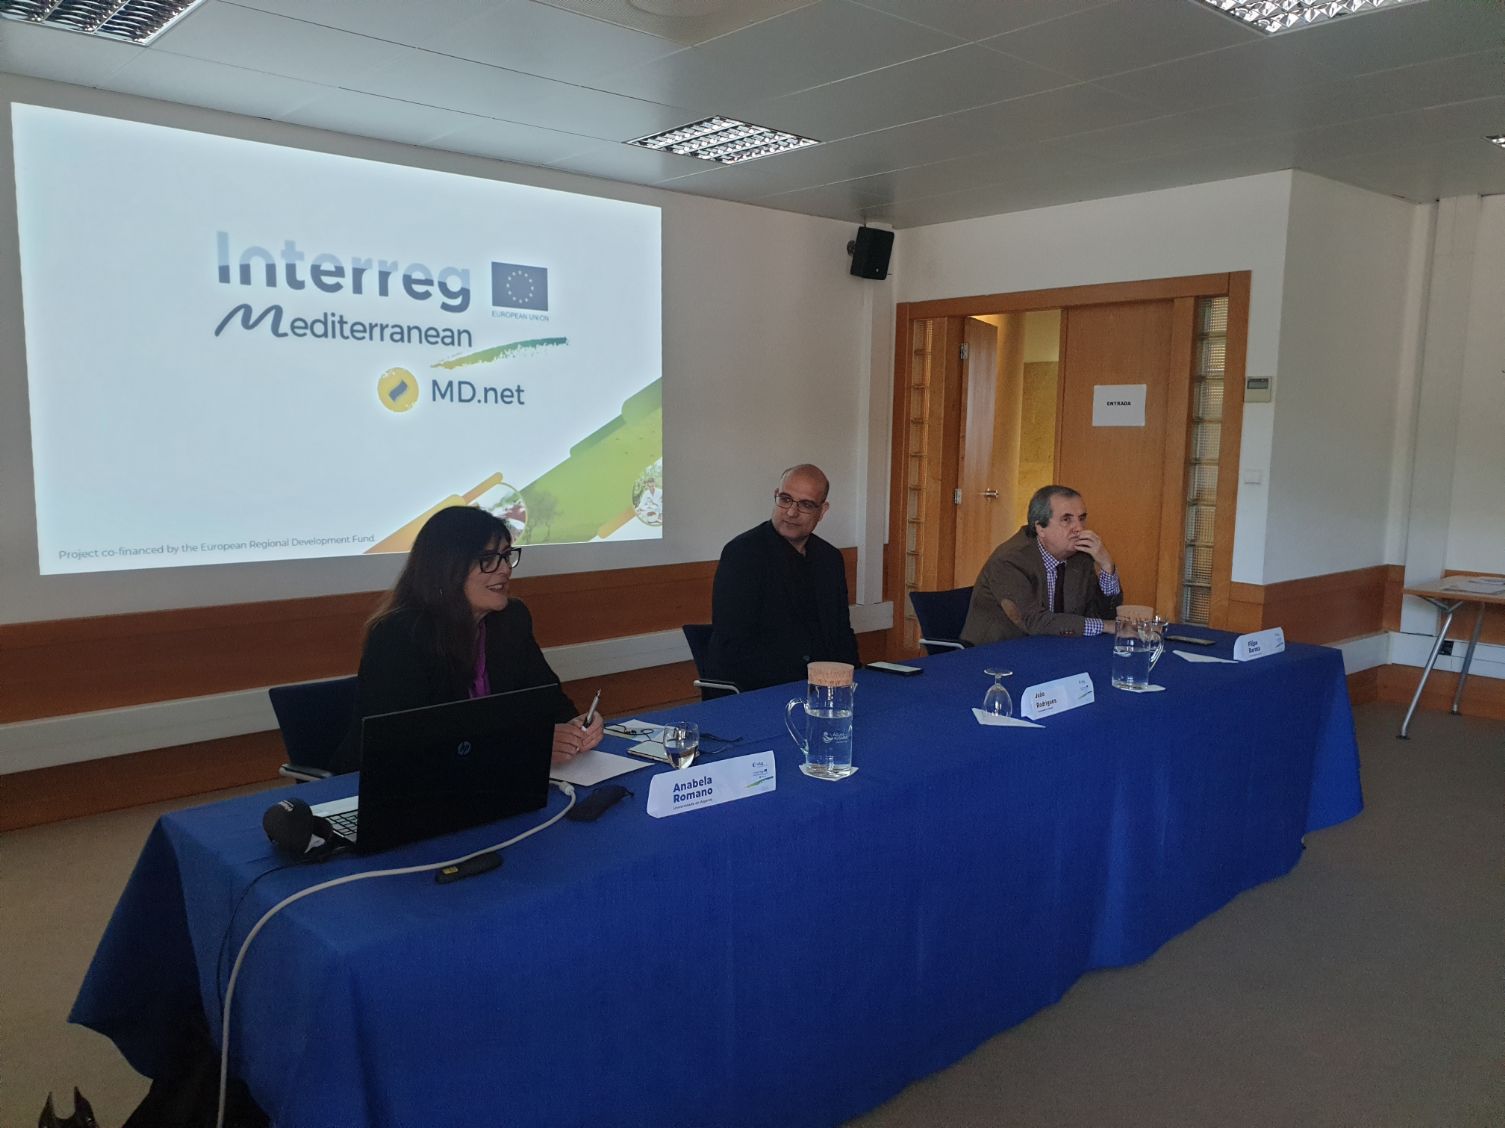 Seminário na Universidade do Algarve reforça conhecimento sobre dieta mediterrânica